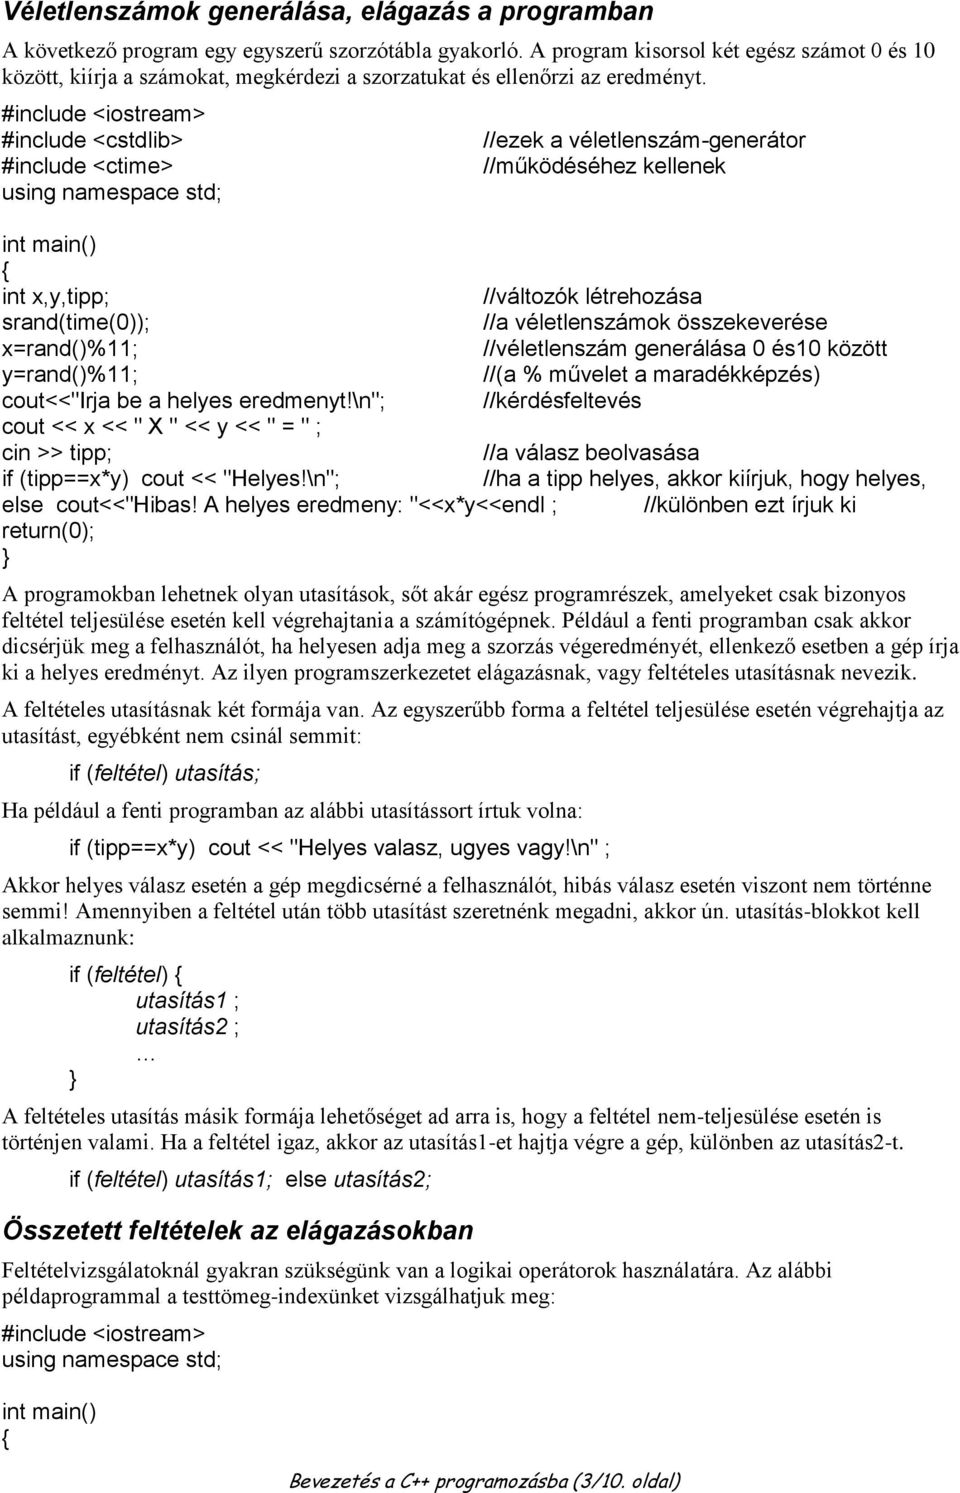 Bevezetés a C++ programozásba - PDF Ingyenes letöltés